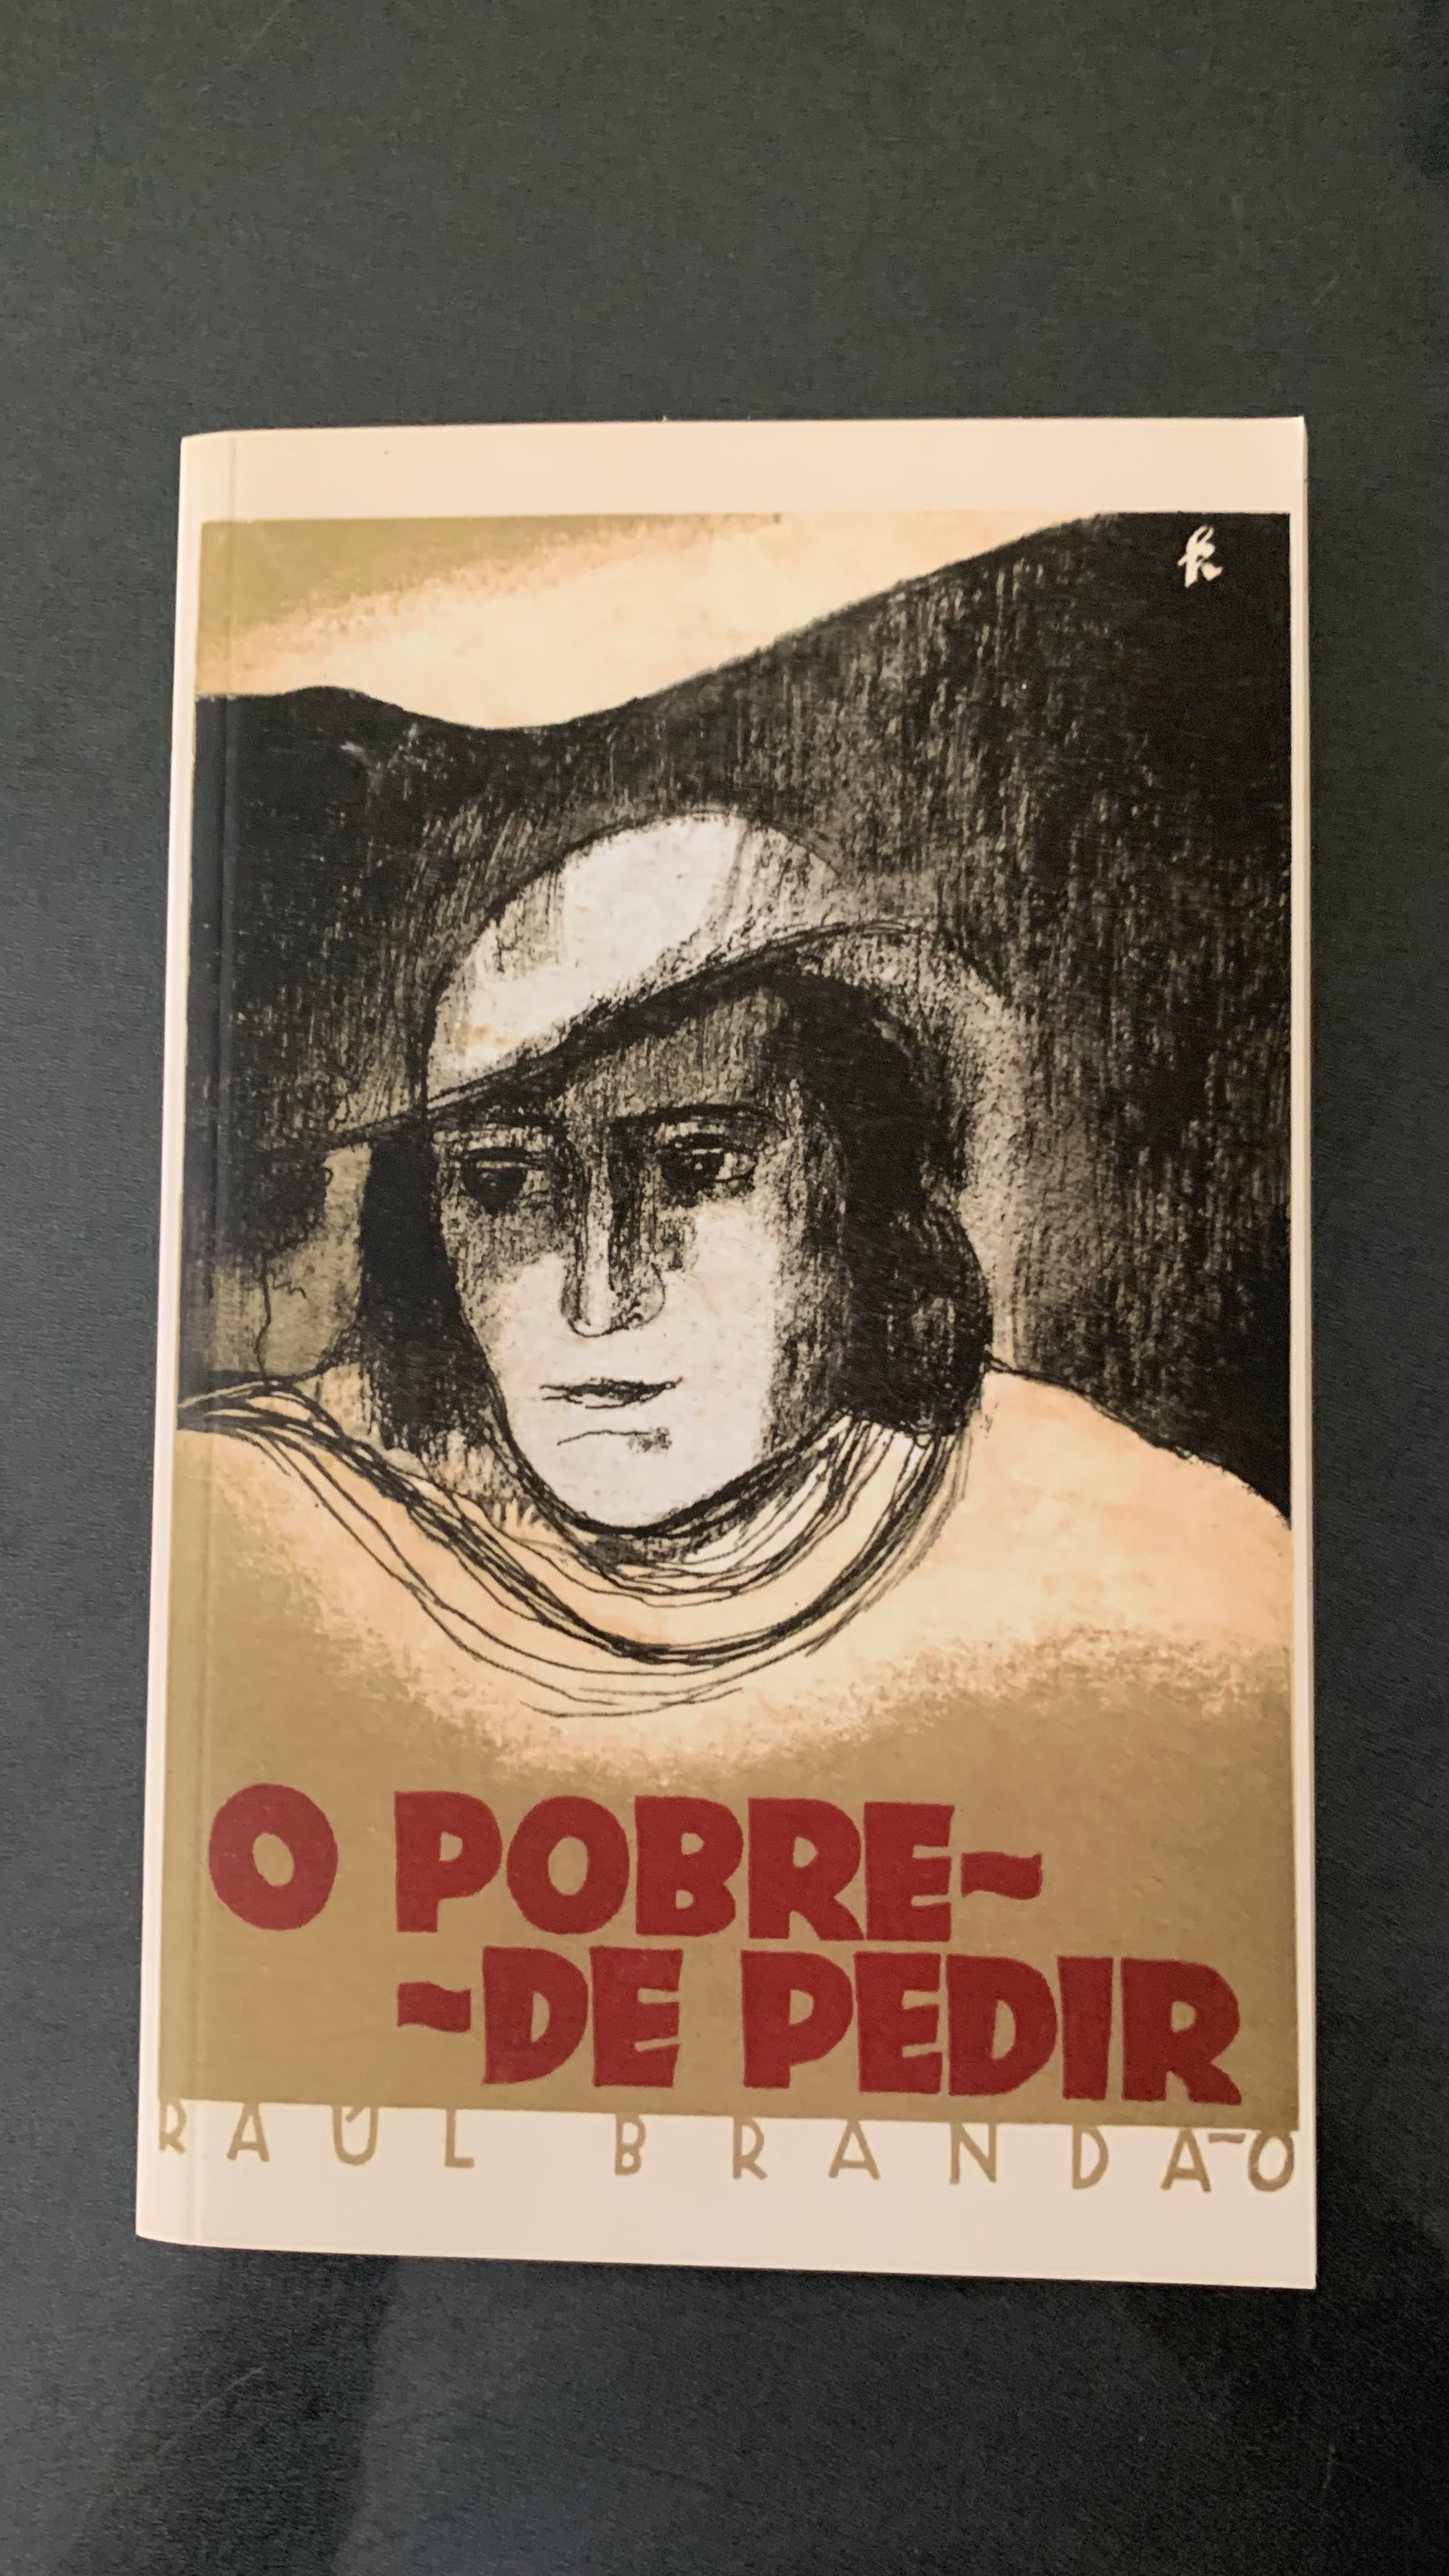 Livro “O pobre de pedir” de Raul Brandão